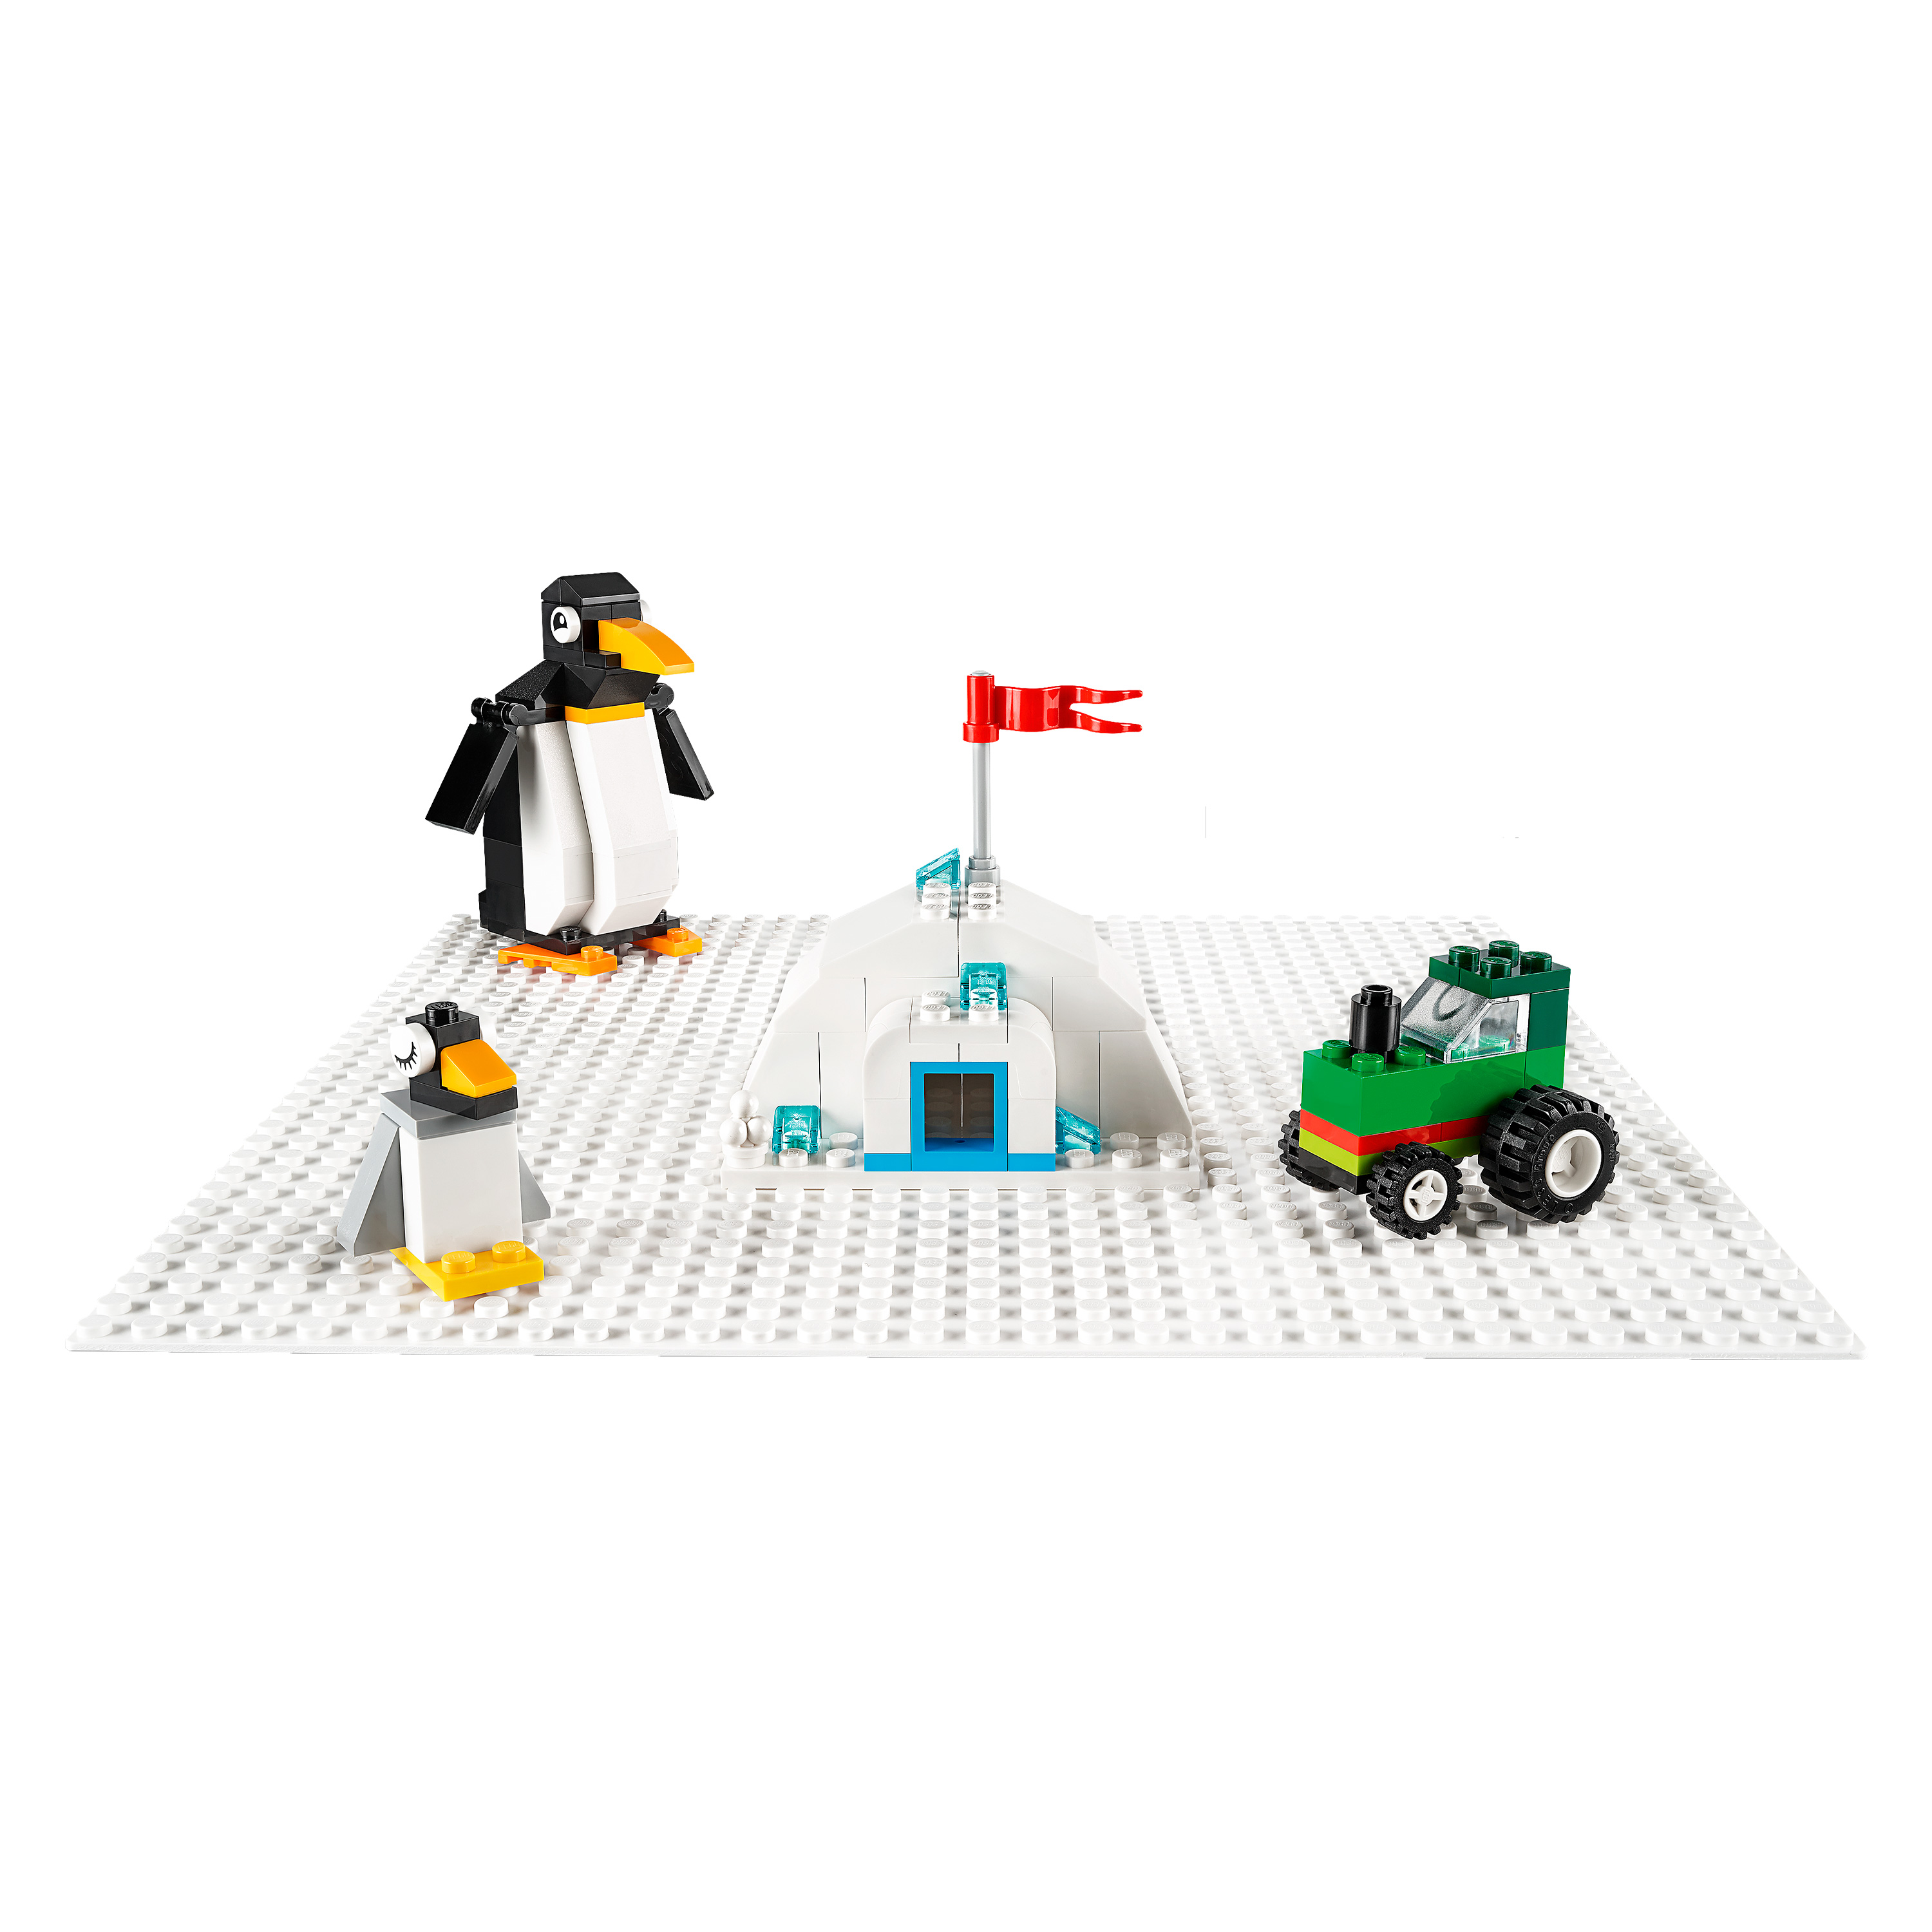 Grund-Platte - 11023 Lego Bau-Platte Klemm-bau-Steine grün